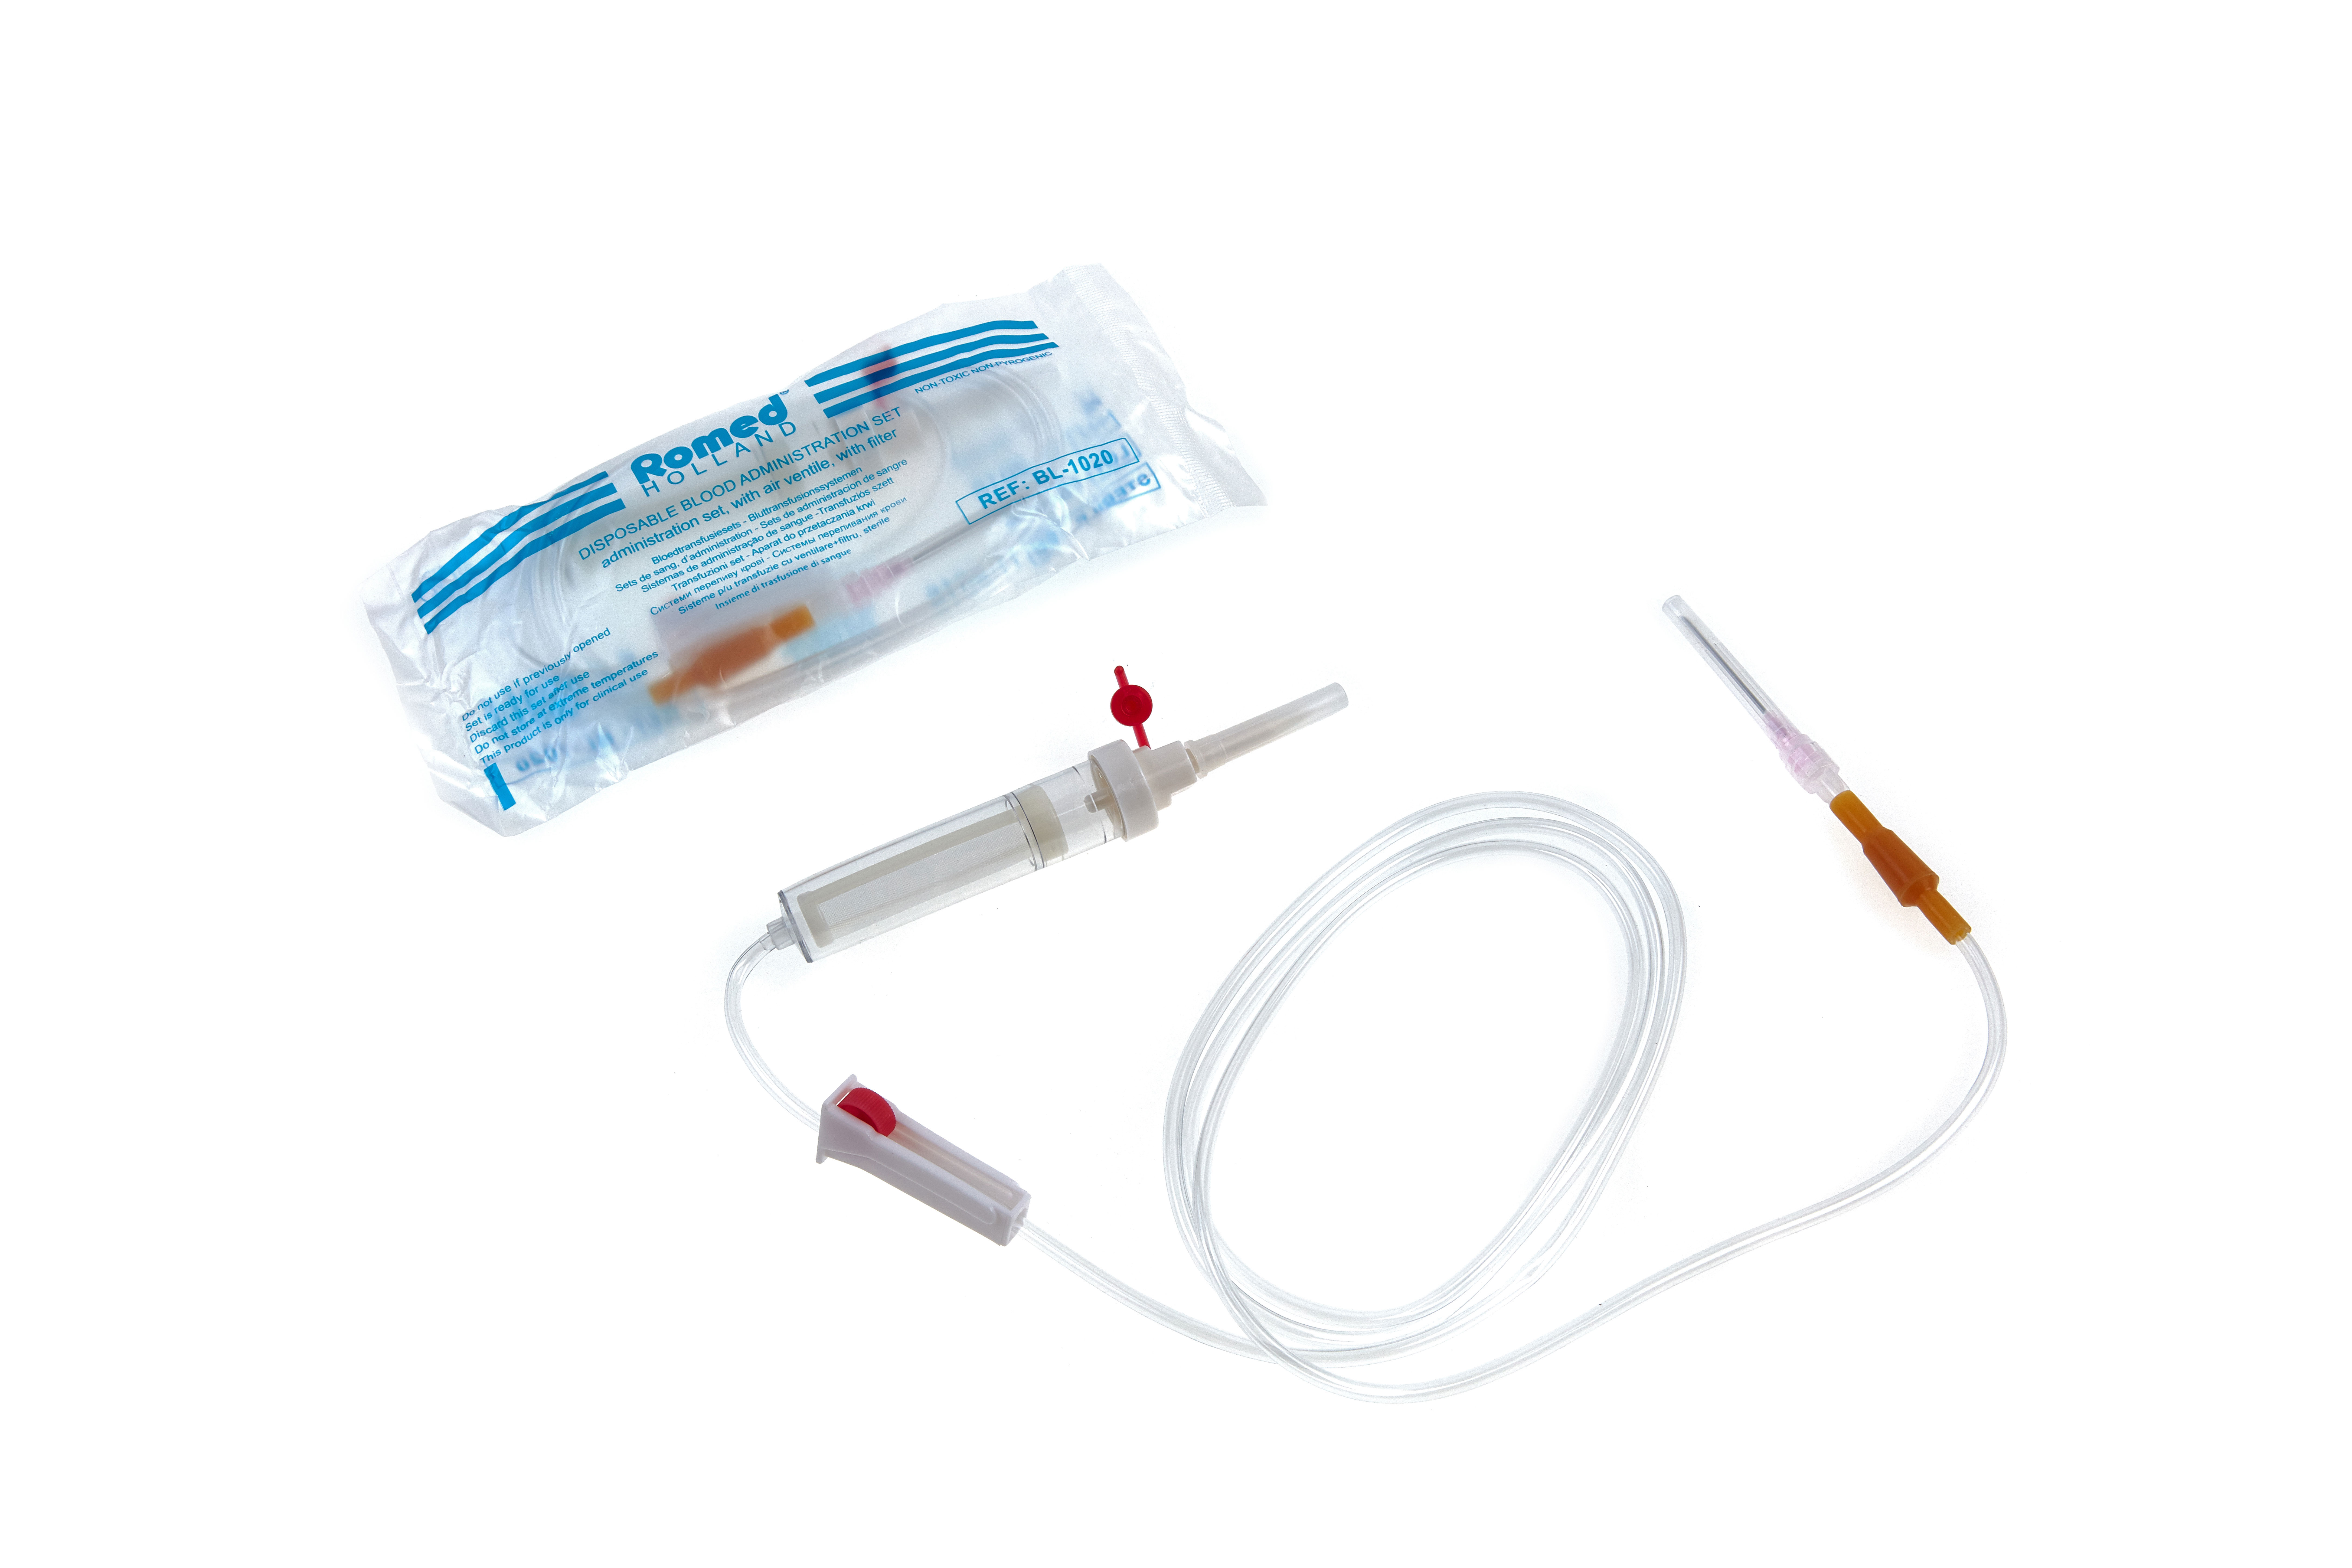 BL-1020 Juegos de administración de sangre Romed con ventilación de aire + filtro, estériles por unidad en una bolsa de polietileno, 250 unidades en una caja de cartón.